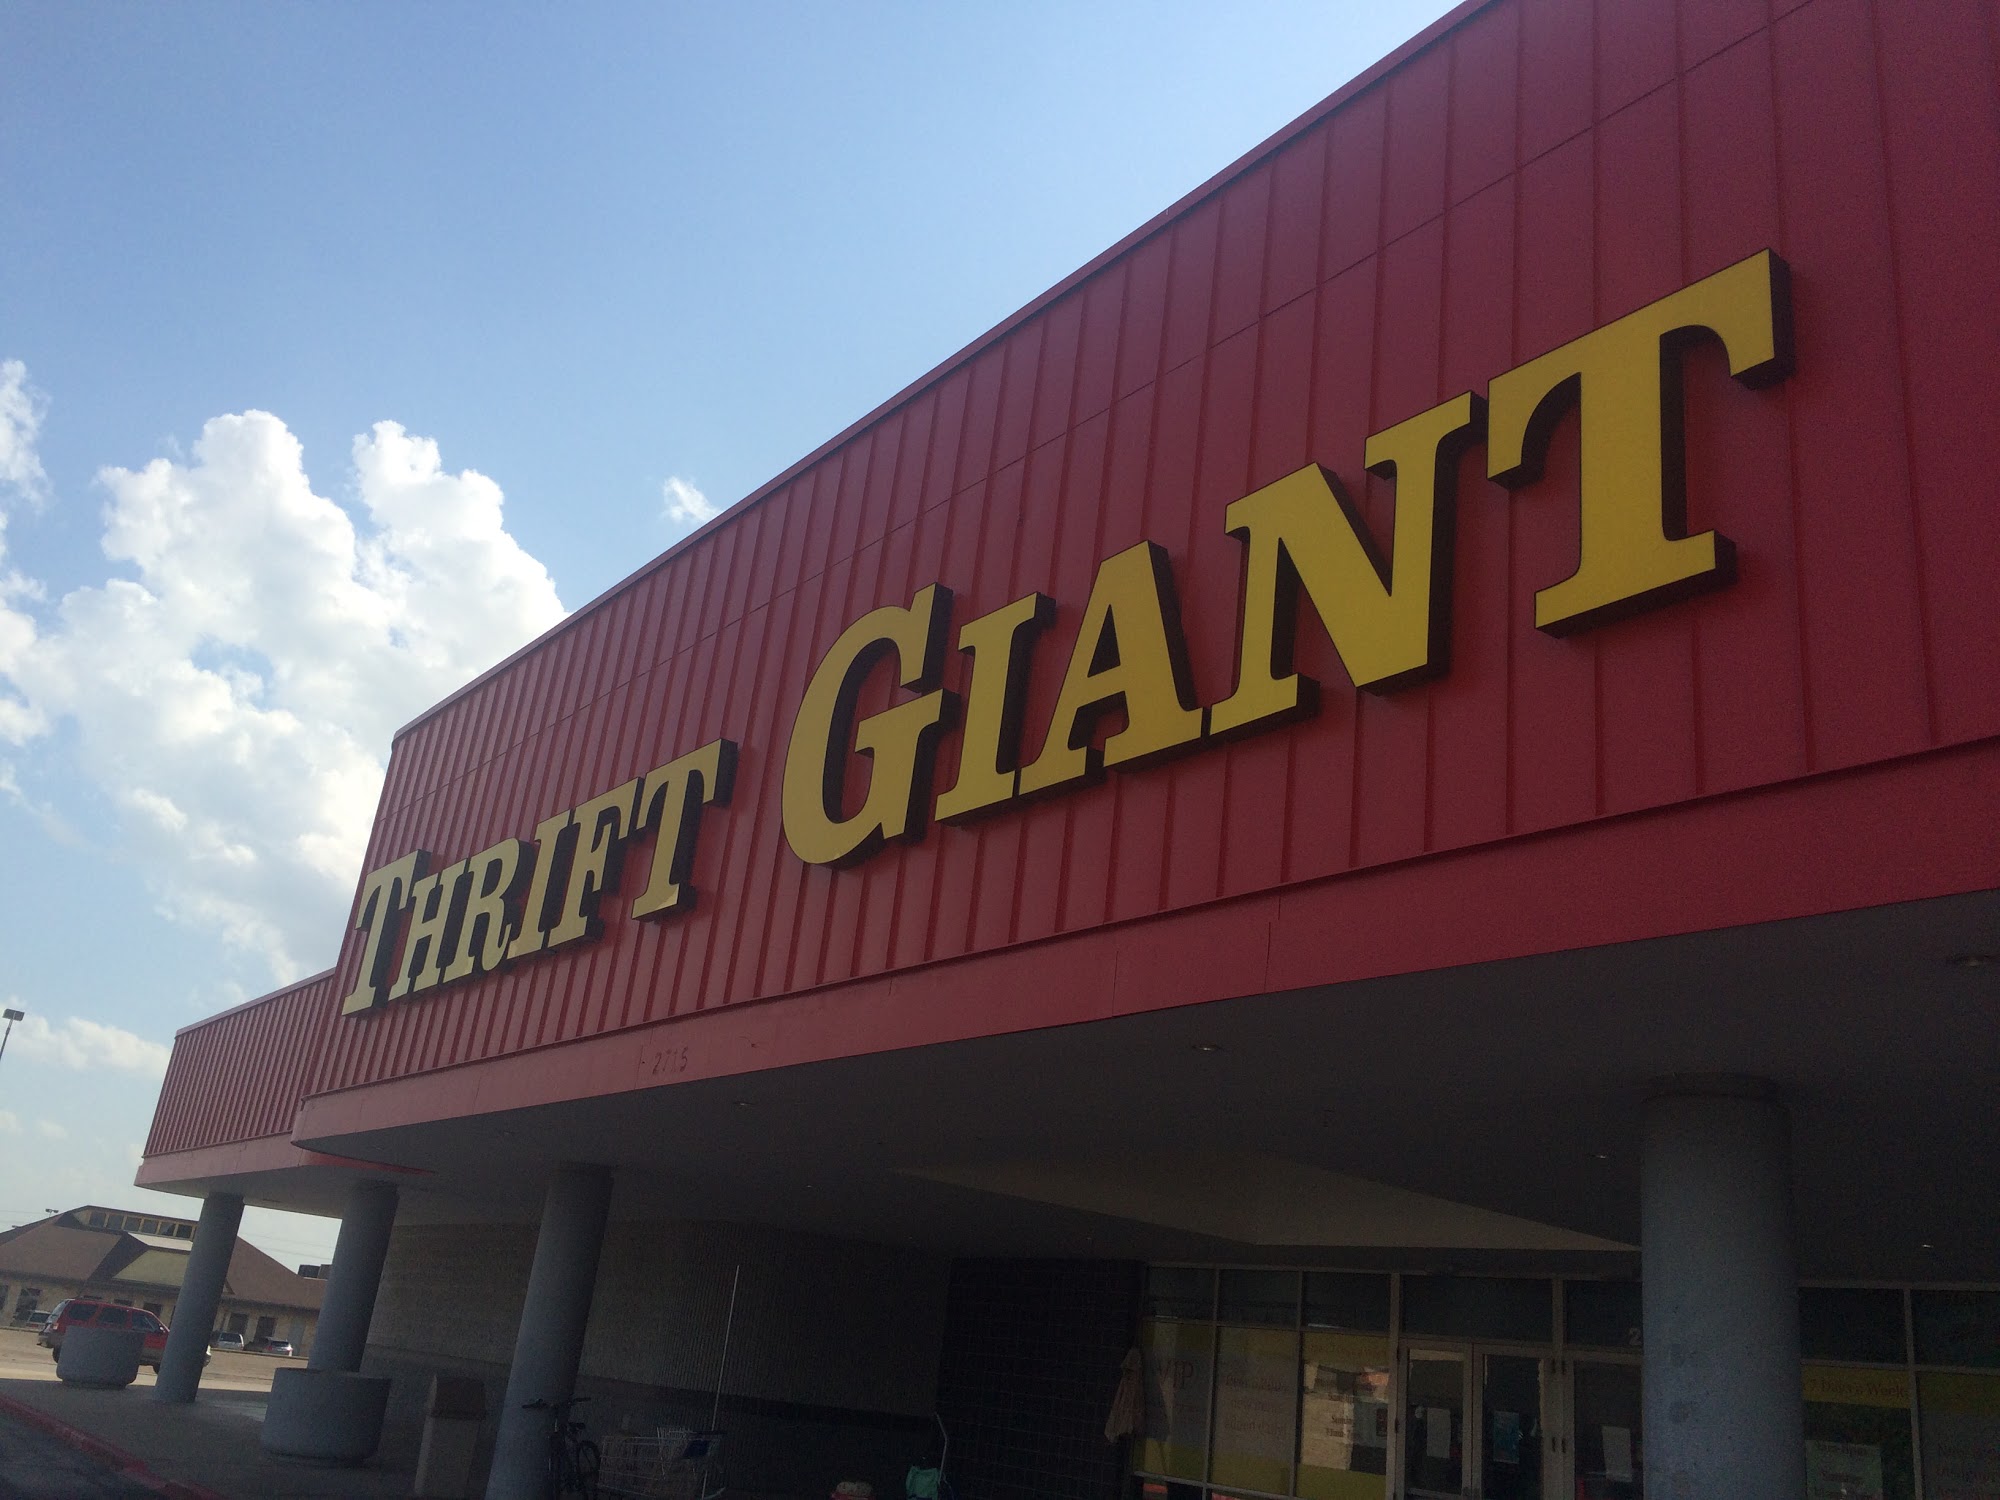 Thrift Giant